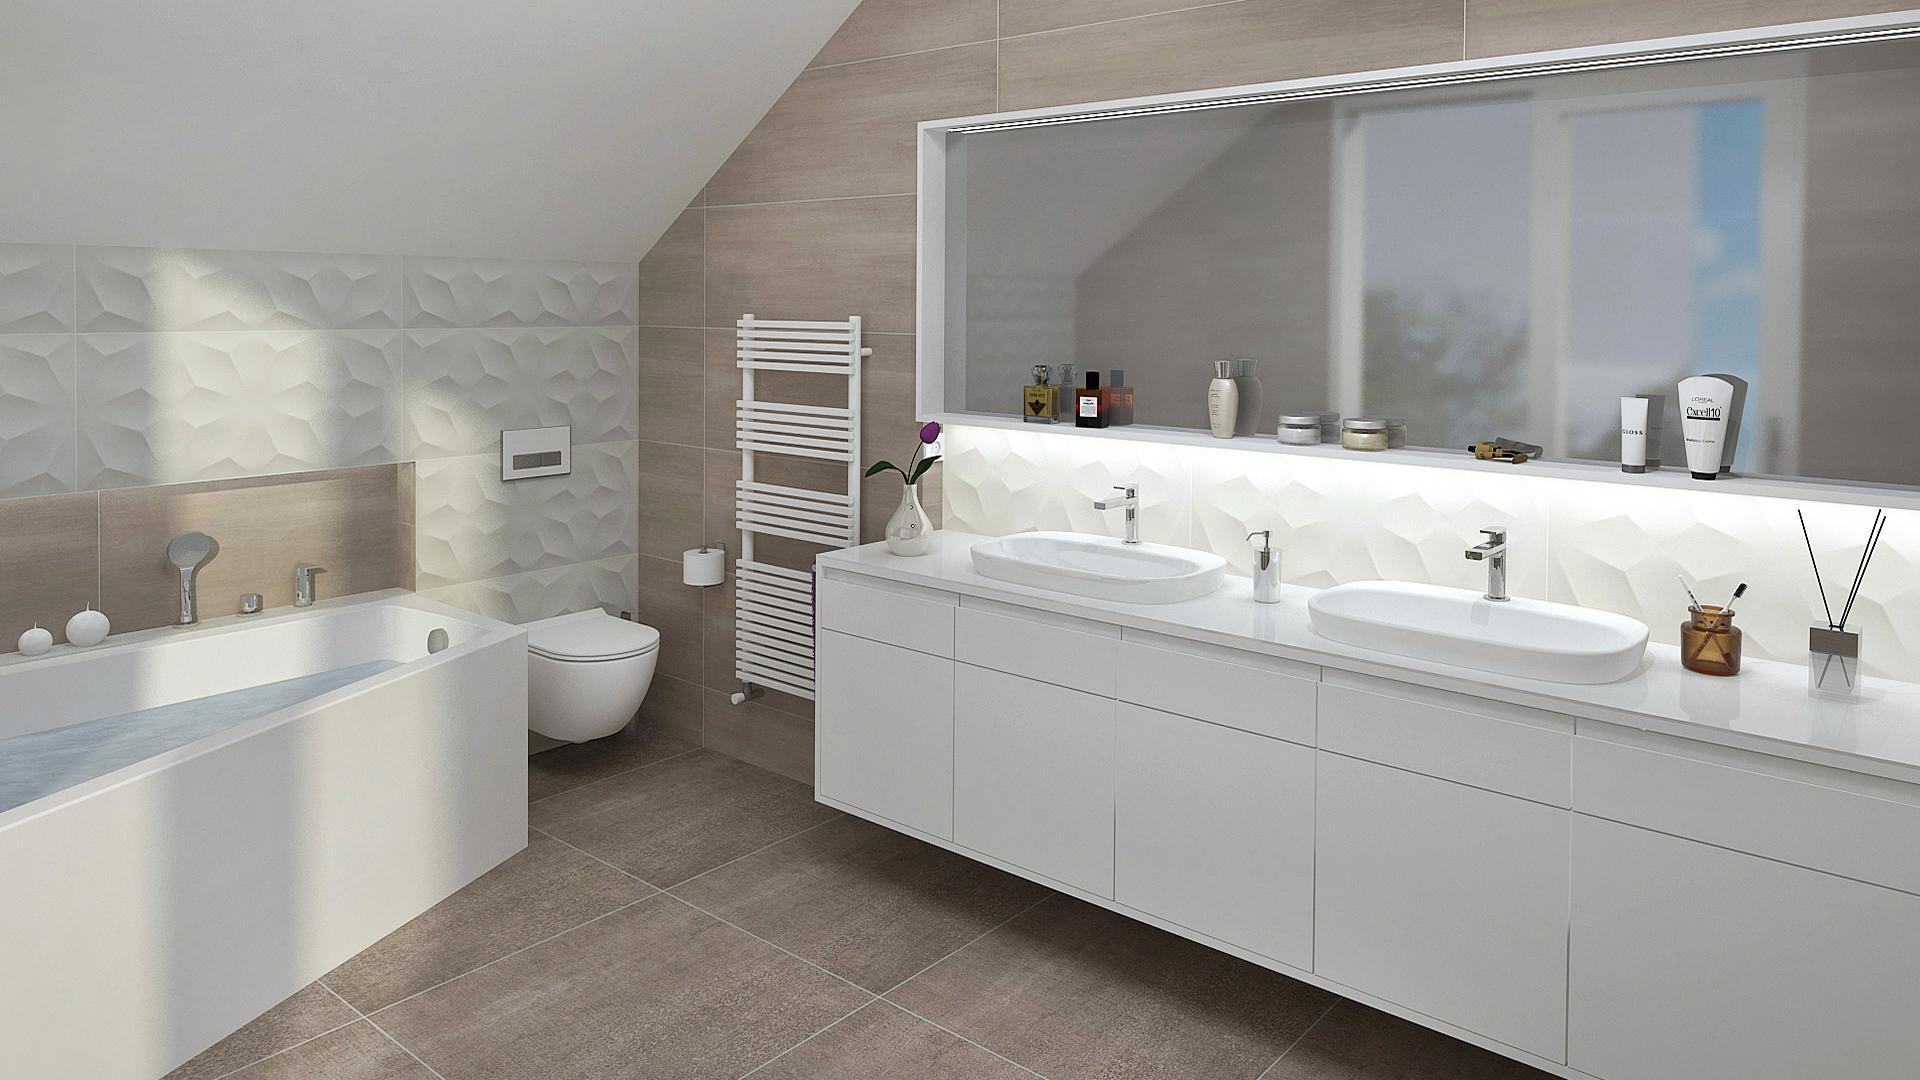 Moderna kopalnica obložena s 3d oblikovano keramiko v cvetličnem vzorcu